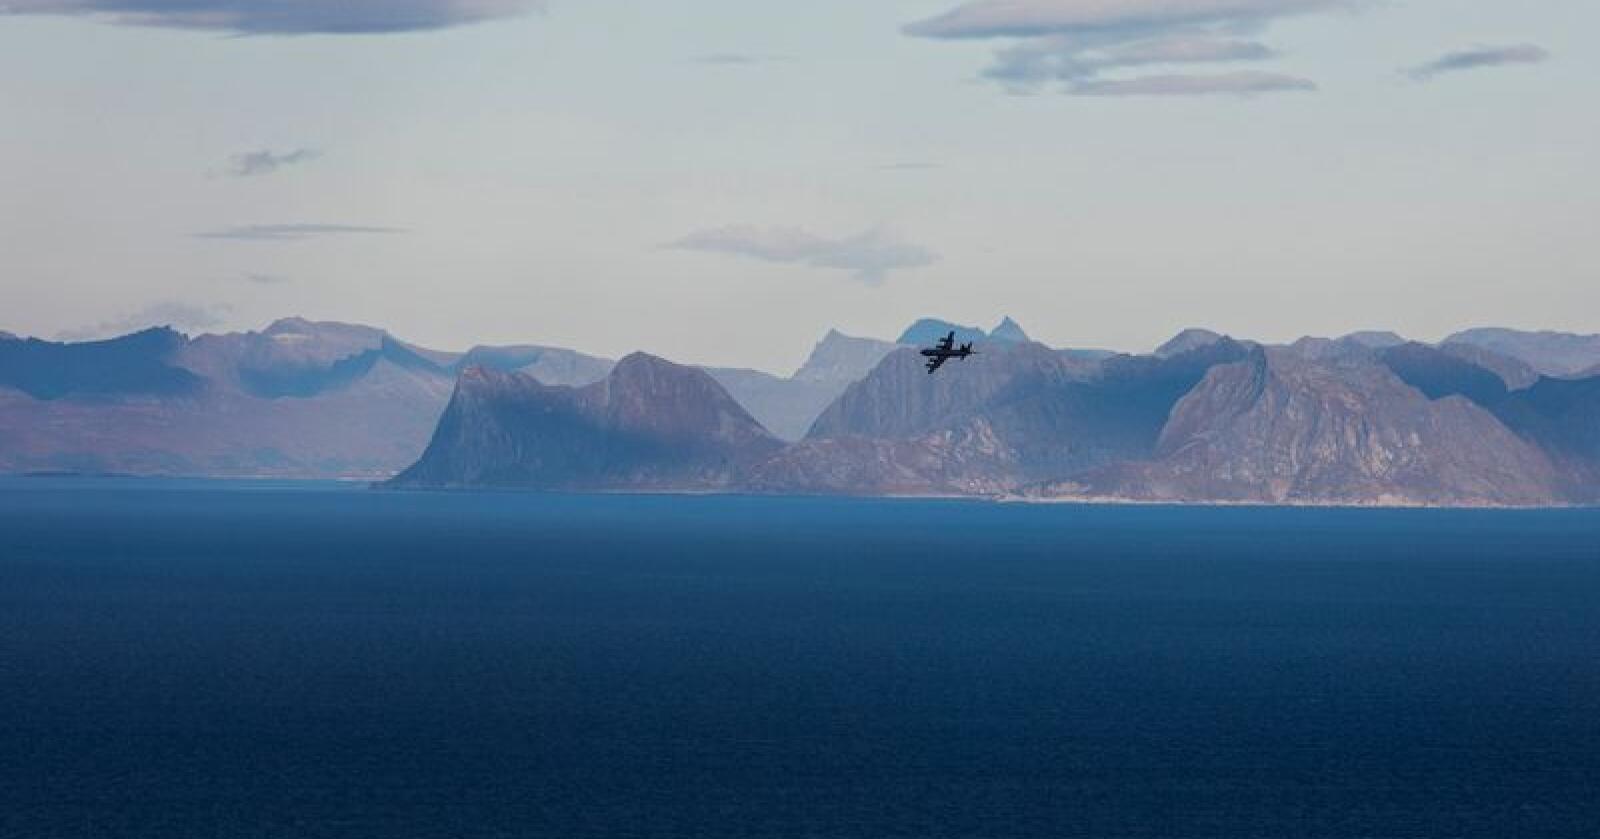 Et Orion-fly på vei inn til landing på Andøya flystasjon. Foto: Tore Meek / NTB scanpix